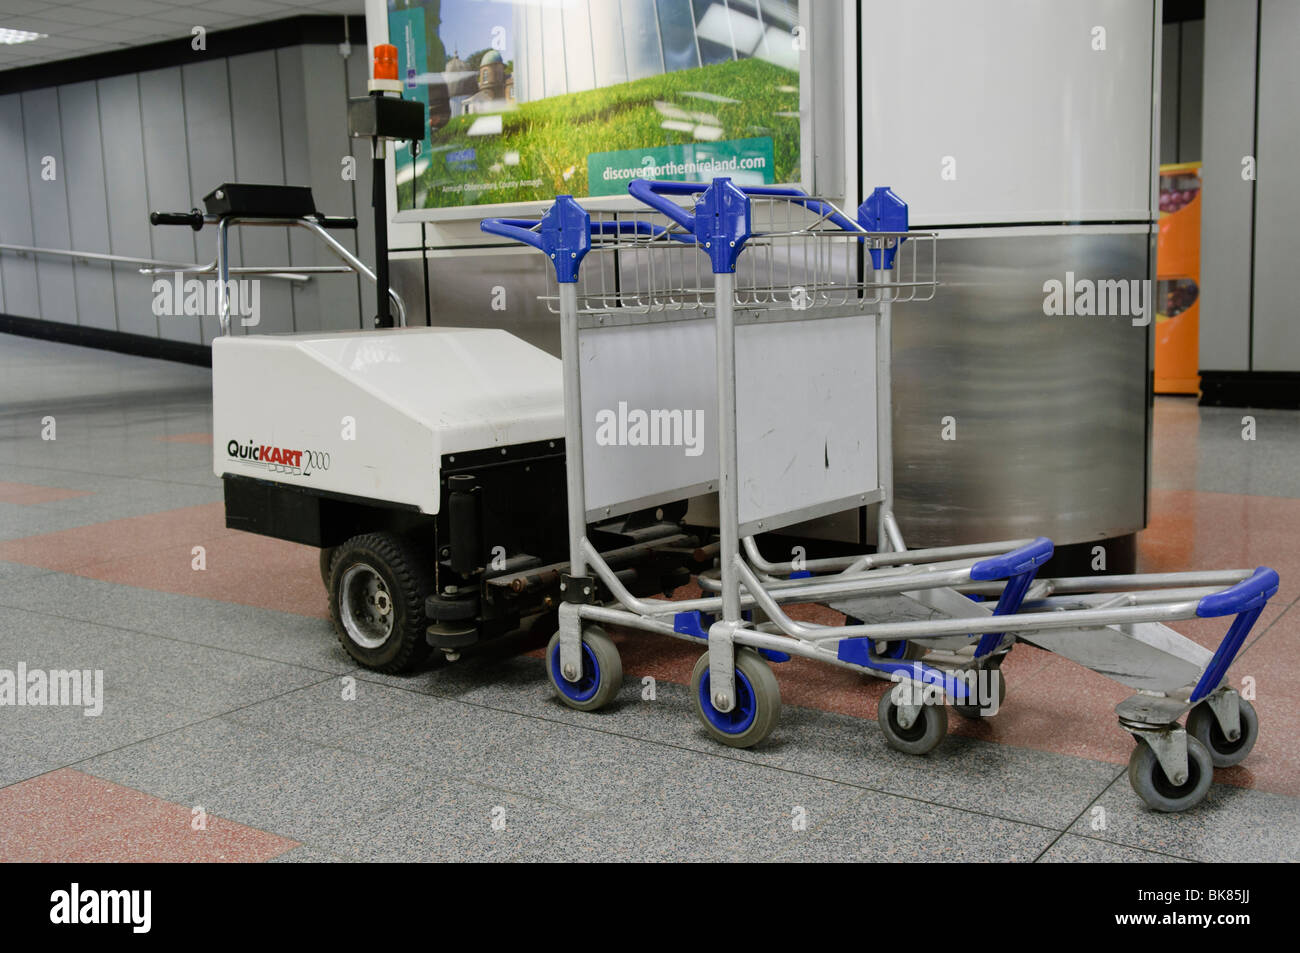 Petit tracteur électrique pour la collecte et l'unité de chariots en mouvement dans un aéroport Banque D'Images